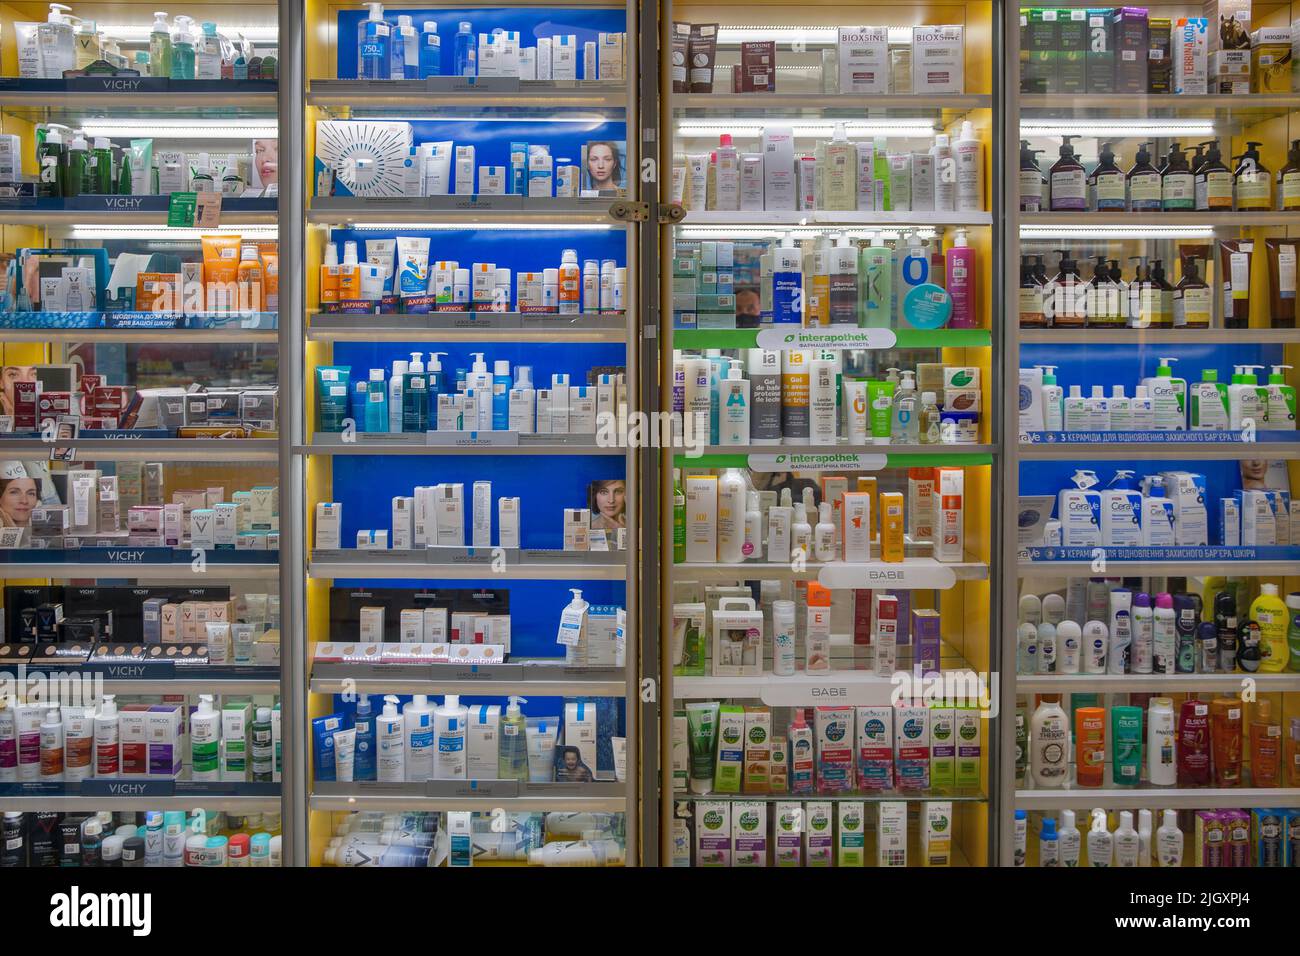 Marioupol, Ukraine - 15 juillet 2021: Rayons de pharmacie plein de différents produits cosmétiques médicaux. Médicaments disposés dans des étagères de fenêtres. Medic Banque D'Images